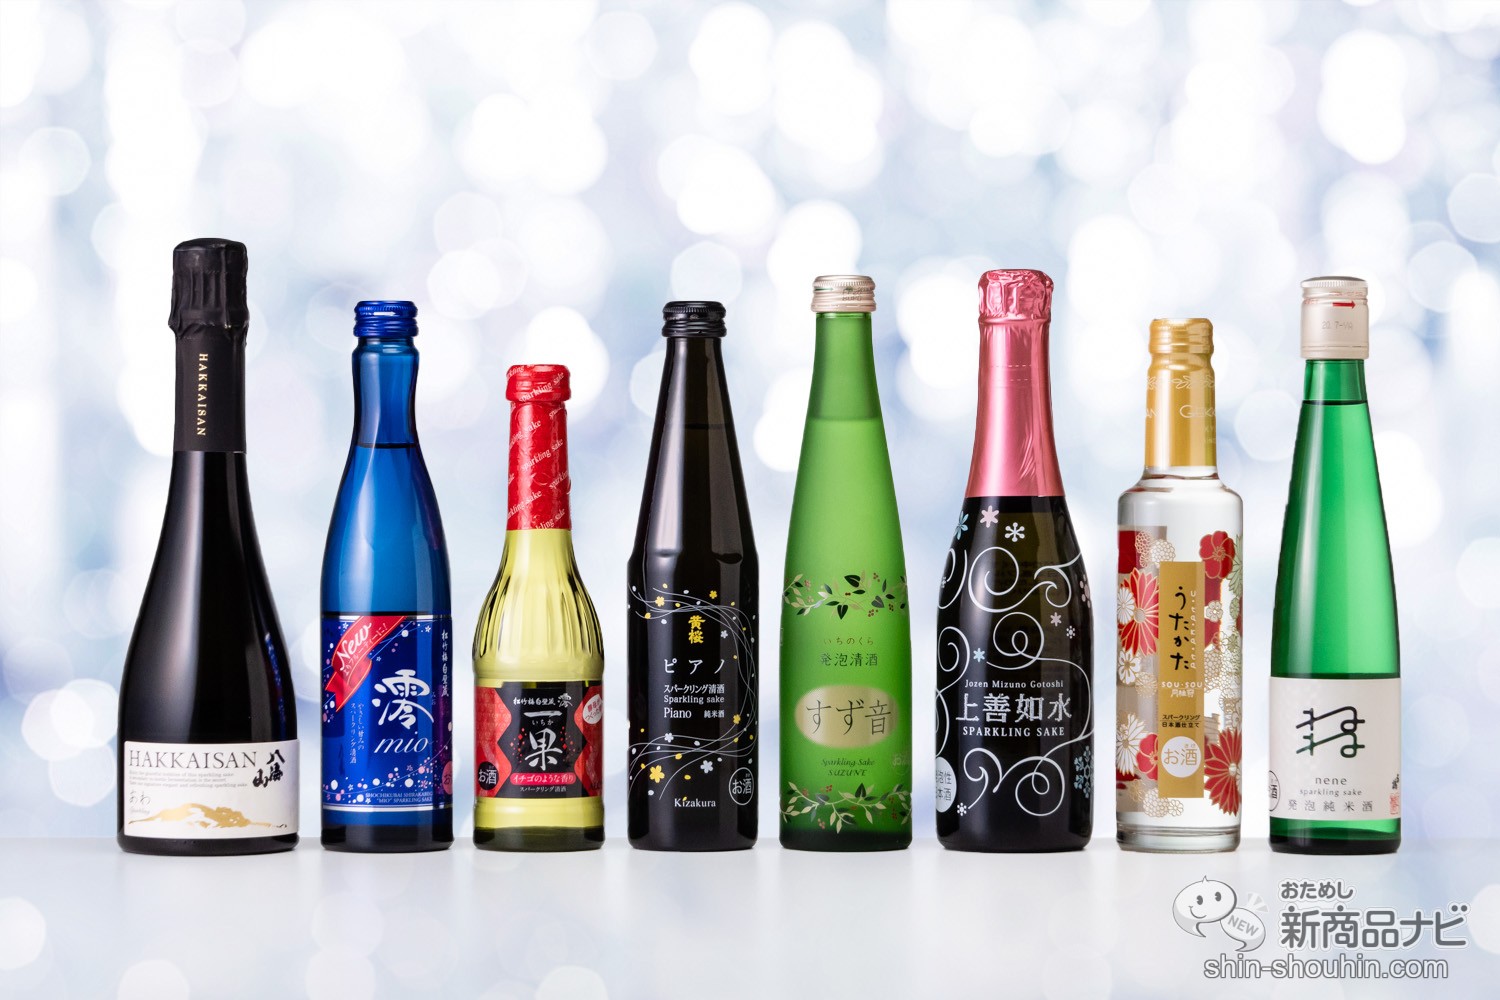 おためし新商品ナビ » Blog Archive » 【スパークリング日本酒】スイスイ飲めるおすすめ日本酒8選！ シャンパンみたいに軽やかで女子会にも◎